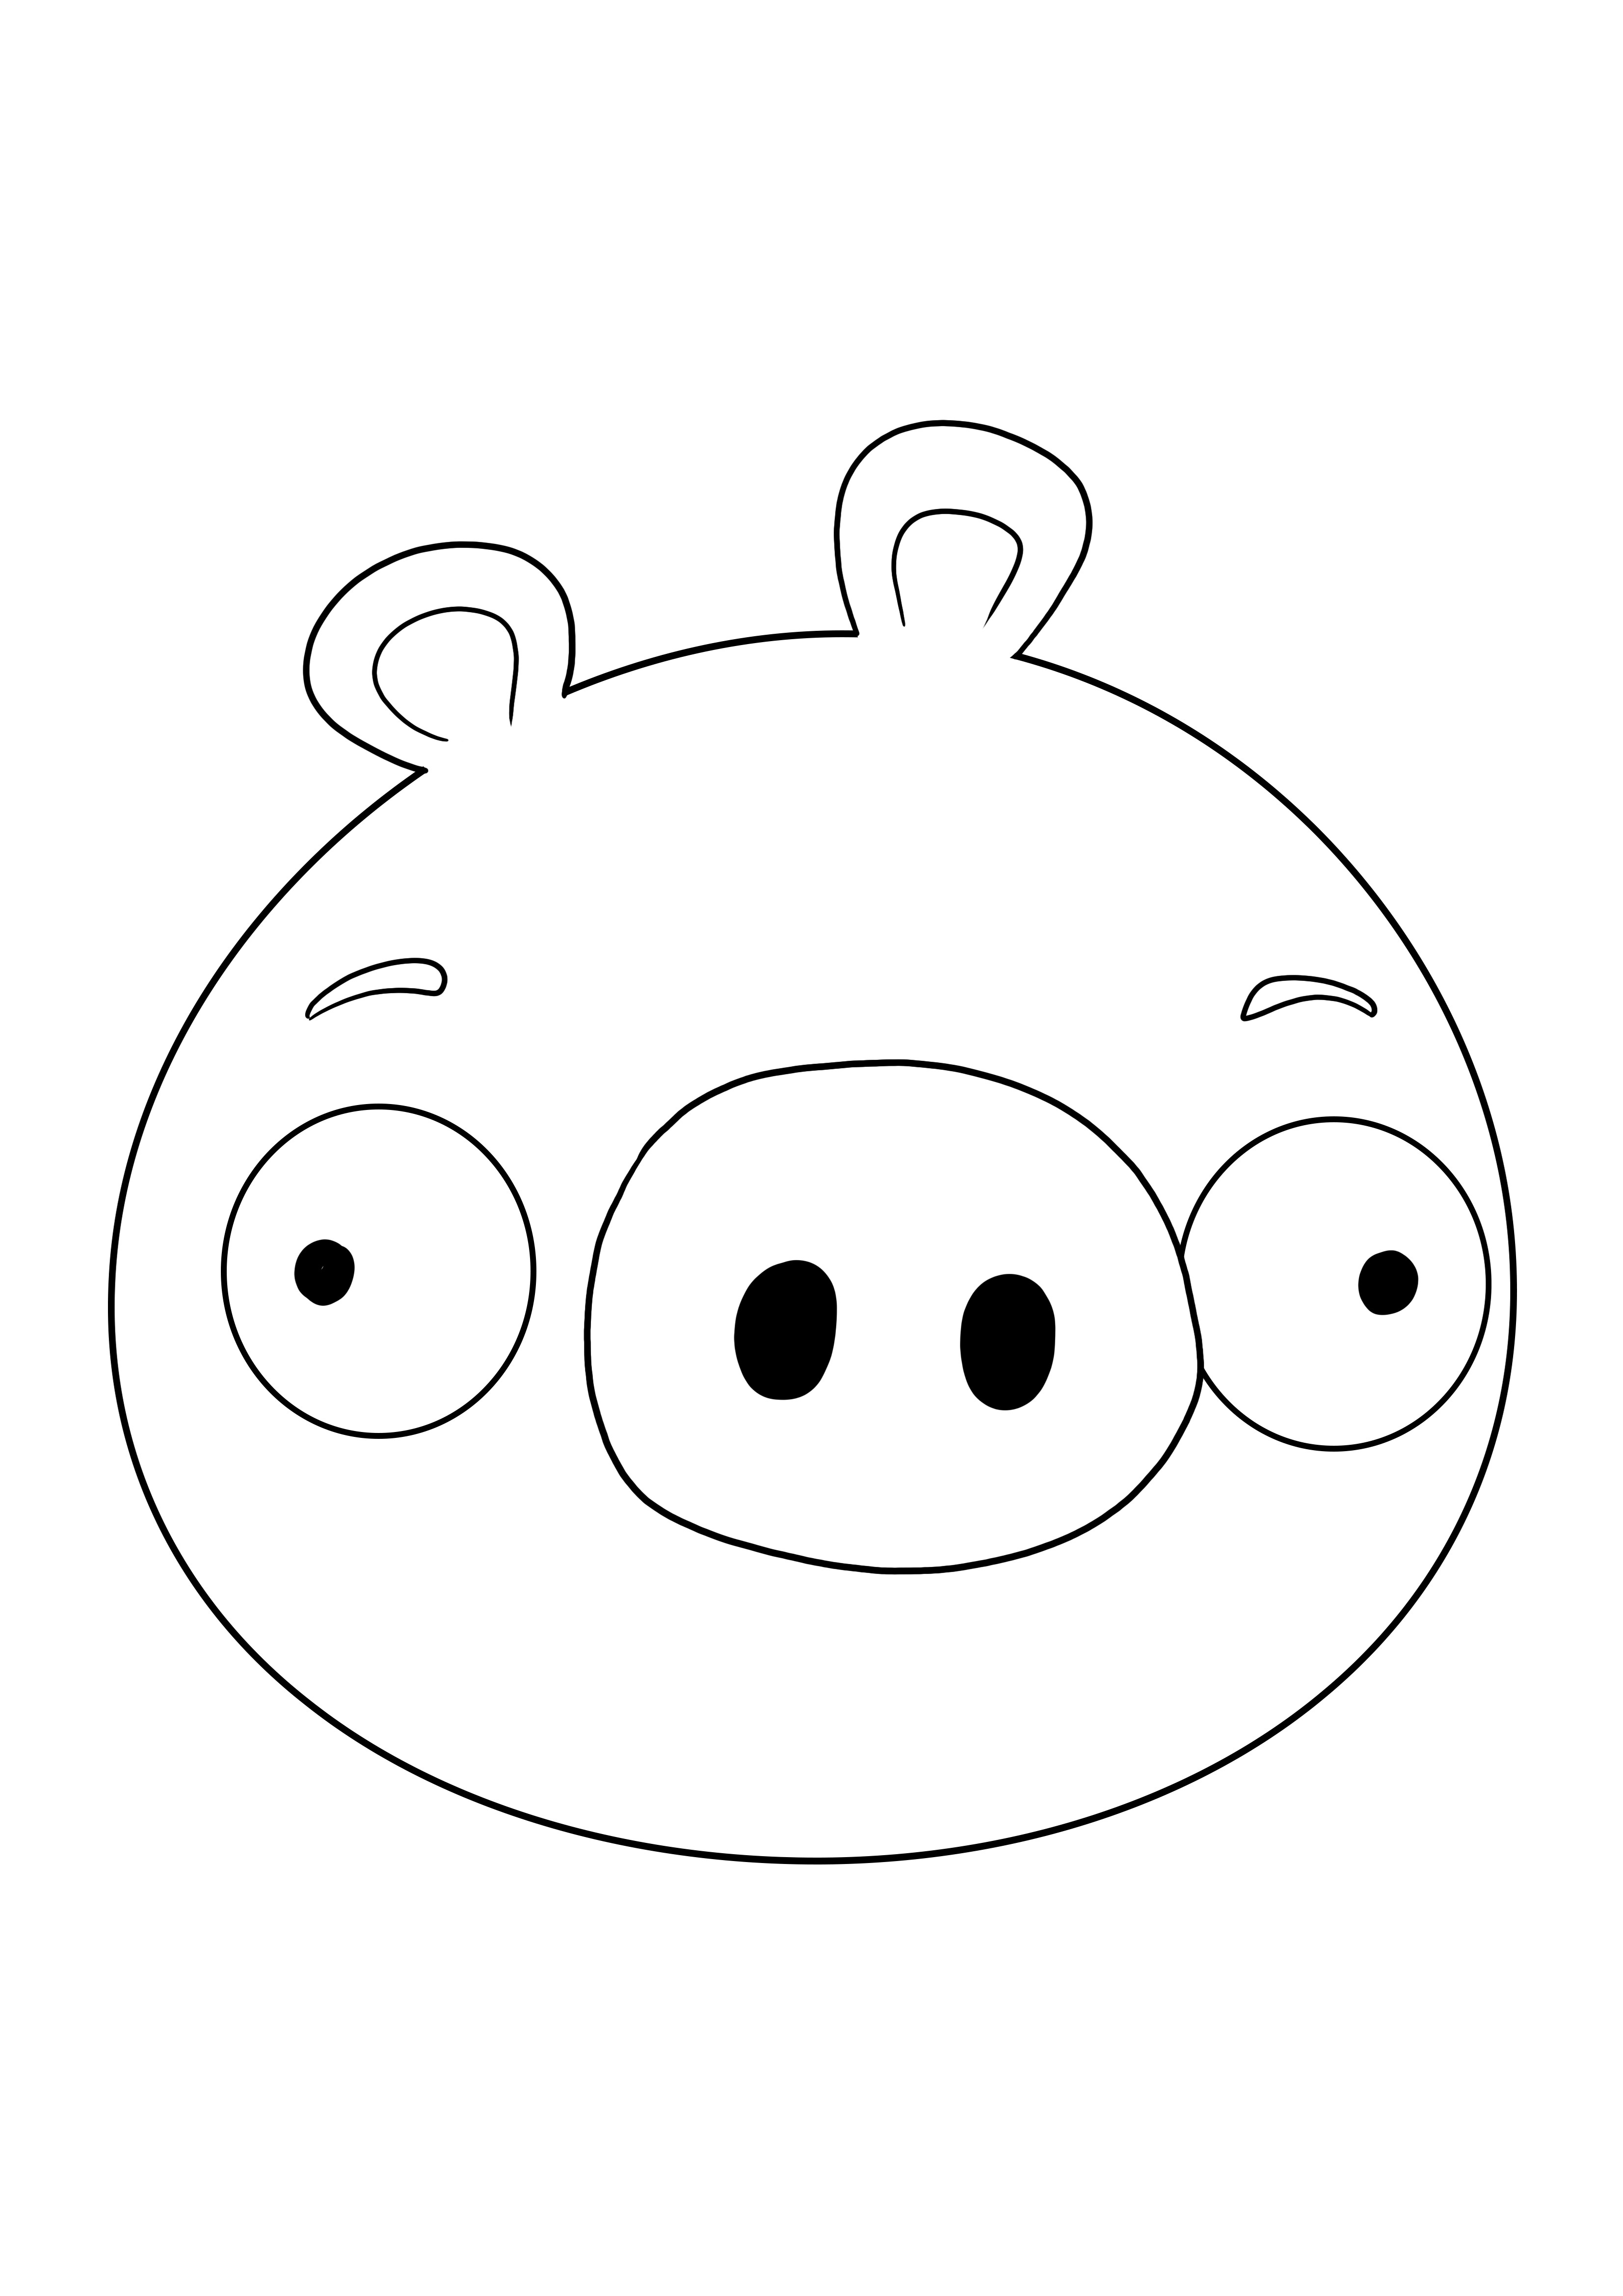 Het gezicht van Minion Pigs is klaar om te worden afgedrukt en gekleurd voor een gratis afbeelding kleurplaat